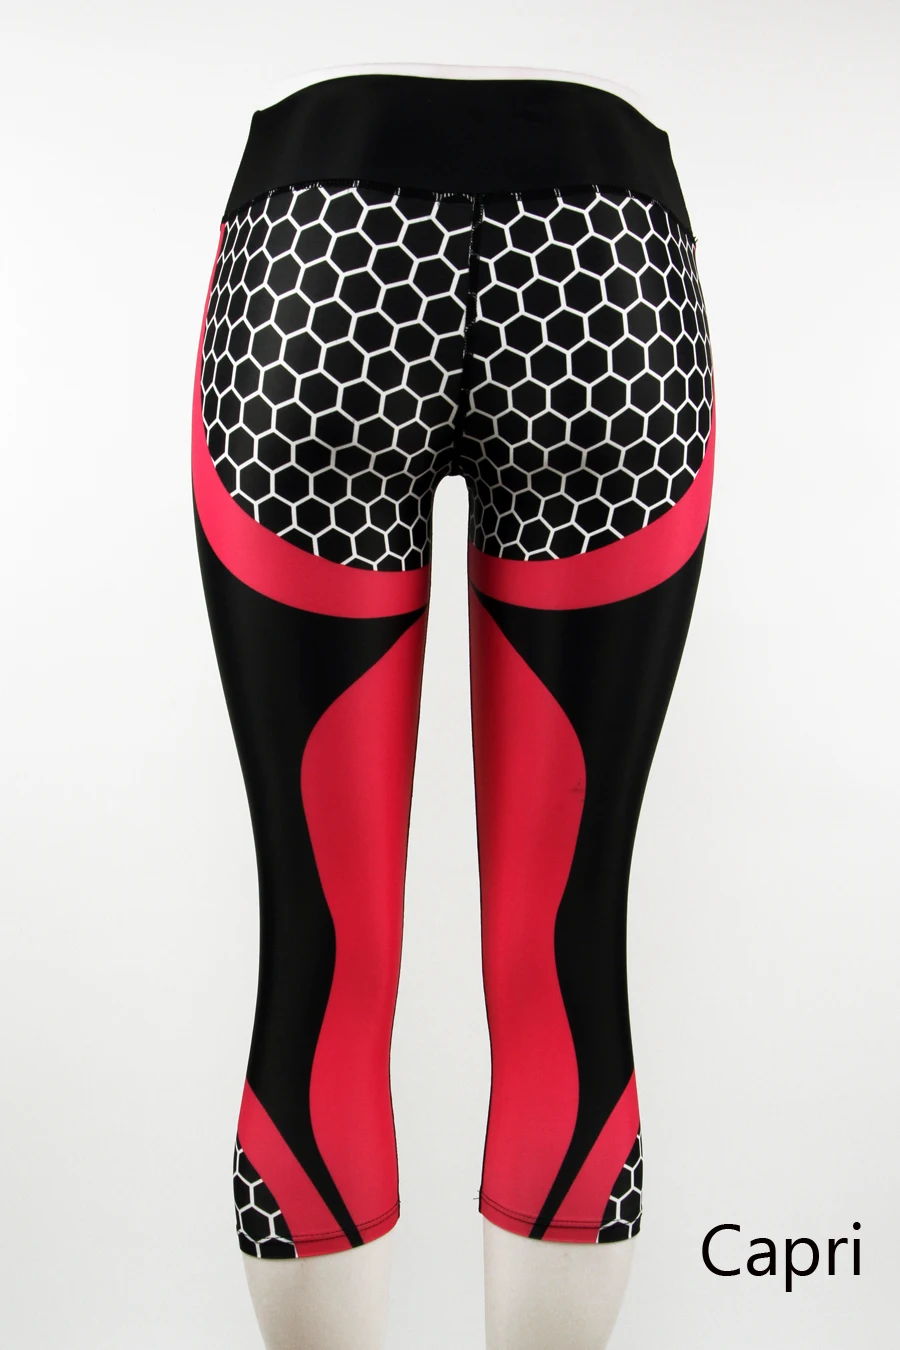 LI-FI спортивные Леггинсы с Сотами, штаны для фитнеса, йоги, женские леггинсы для тренировок, бега, пуш-ап, эластичные обтягивающие штаны для спортзала - Цвет: Pink Capri